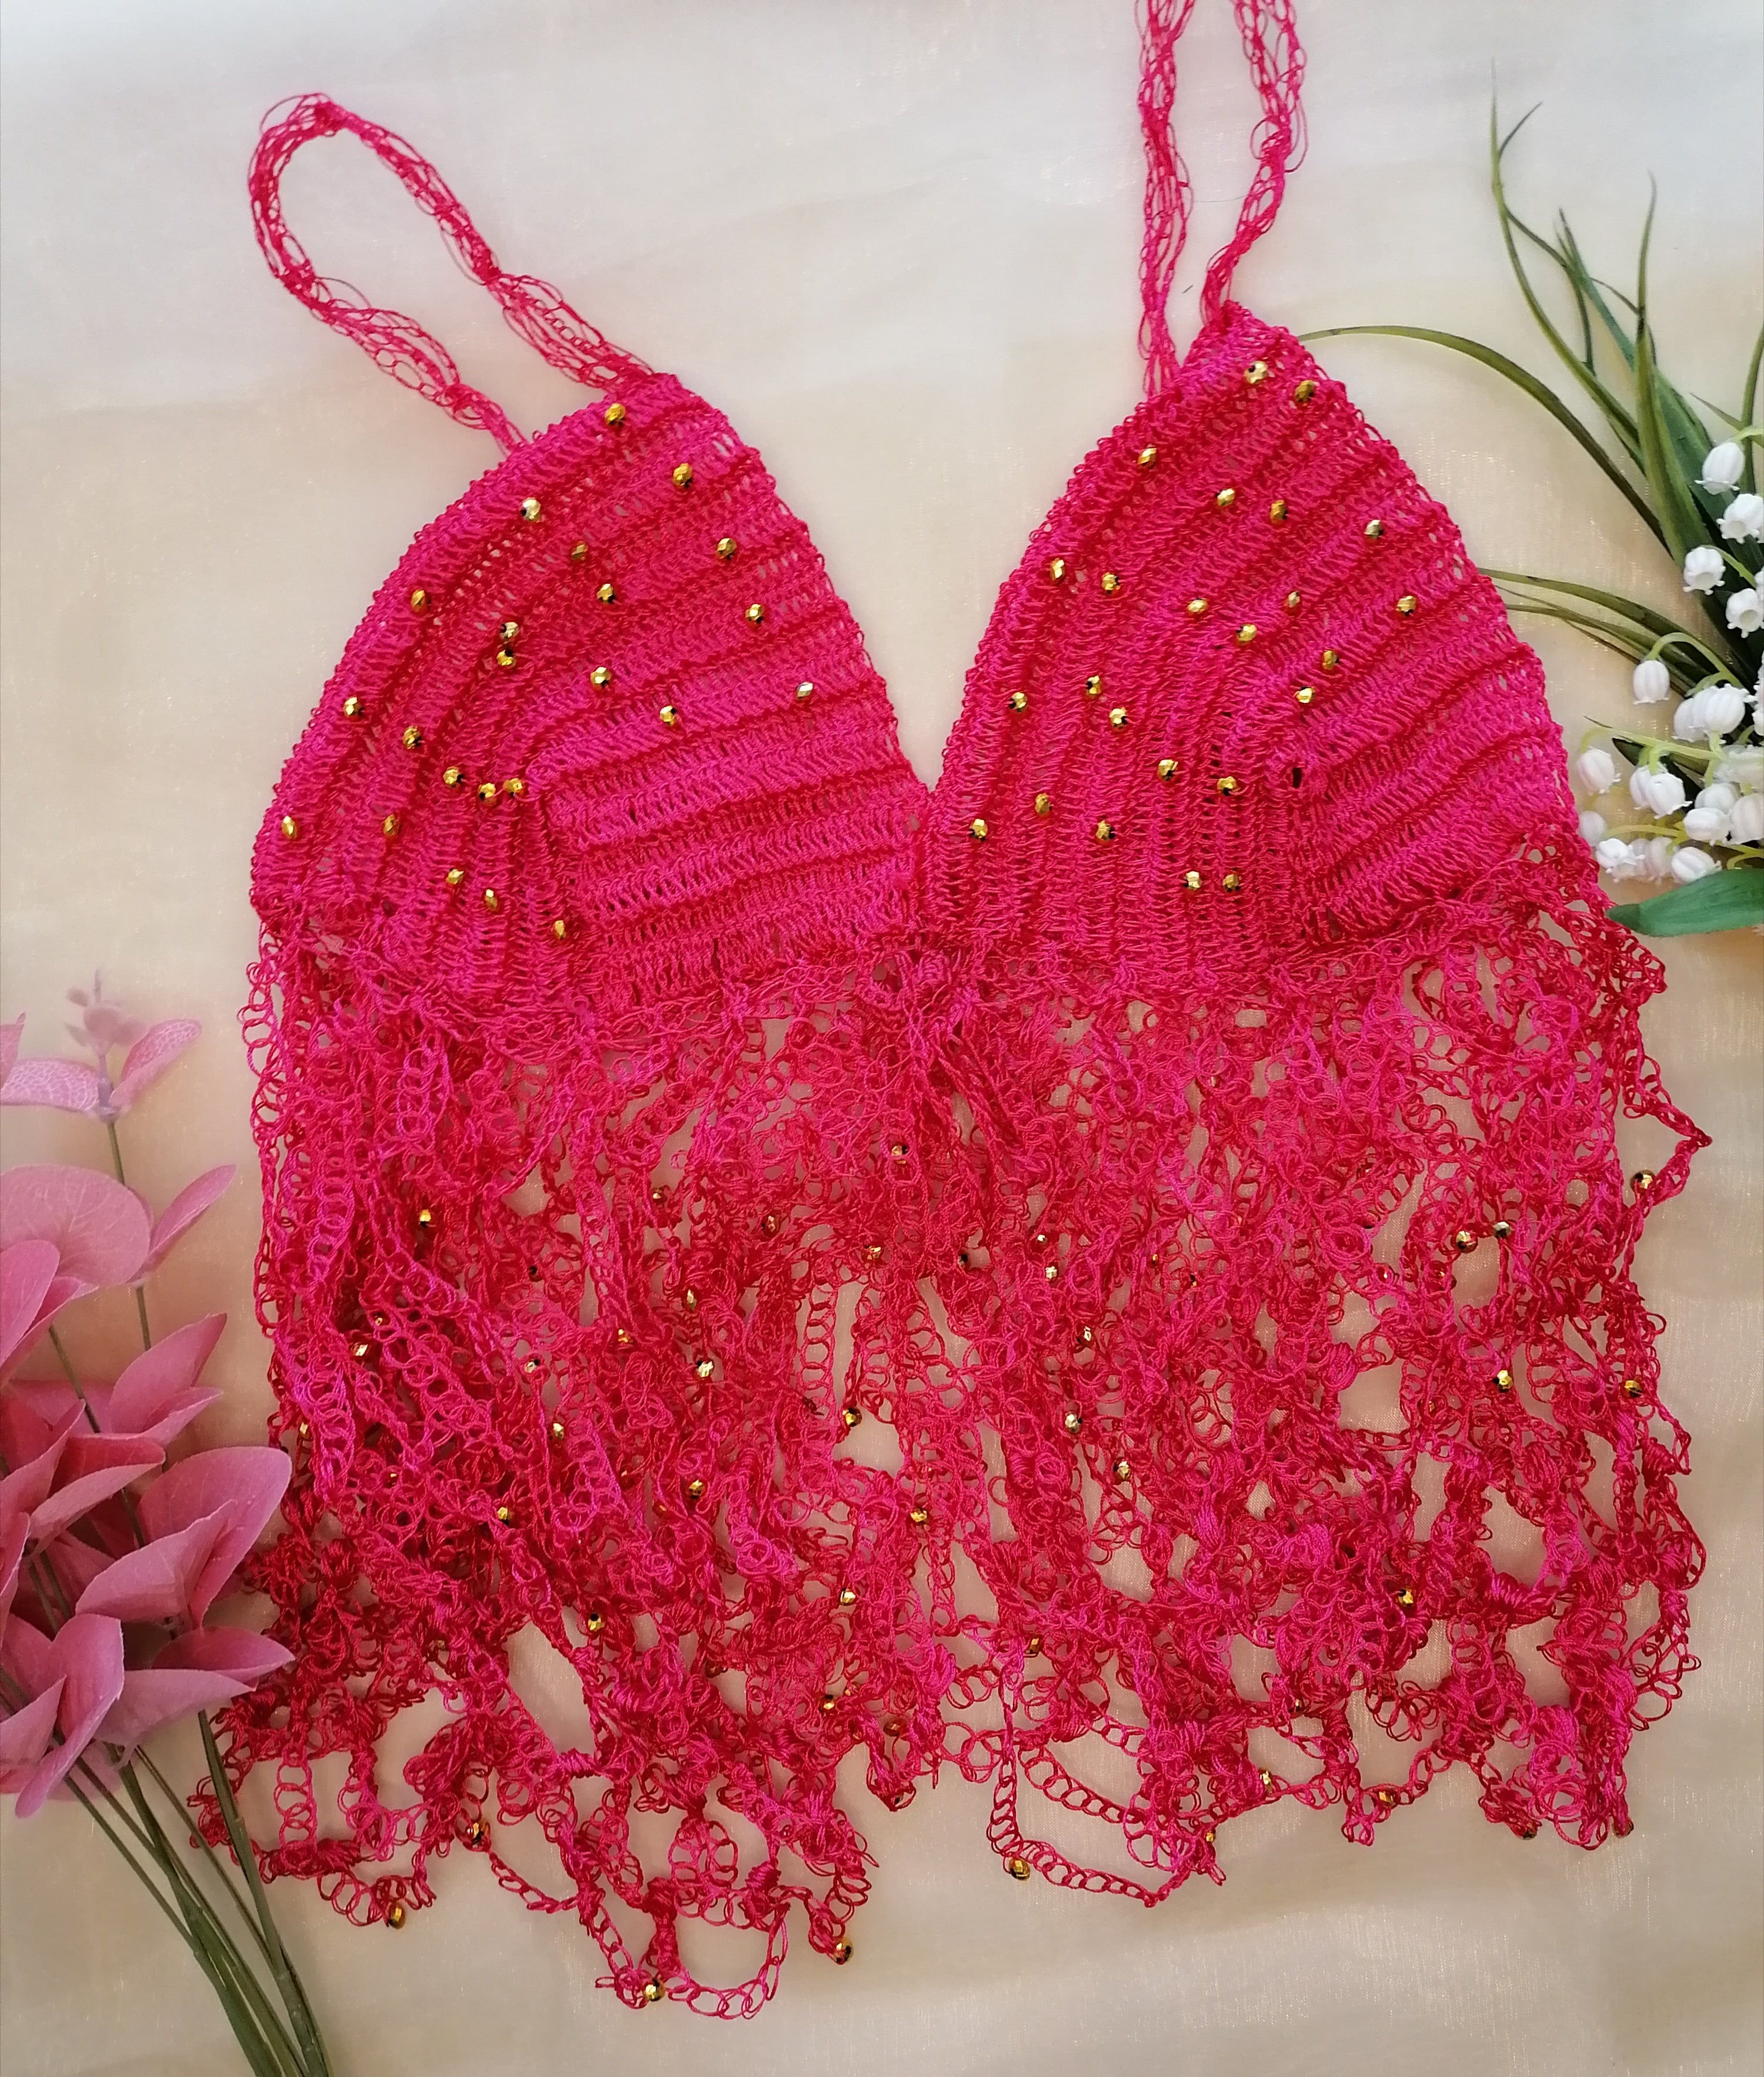 Nala Bralette Top: Crochet pattern